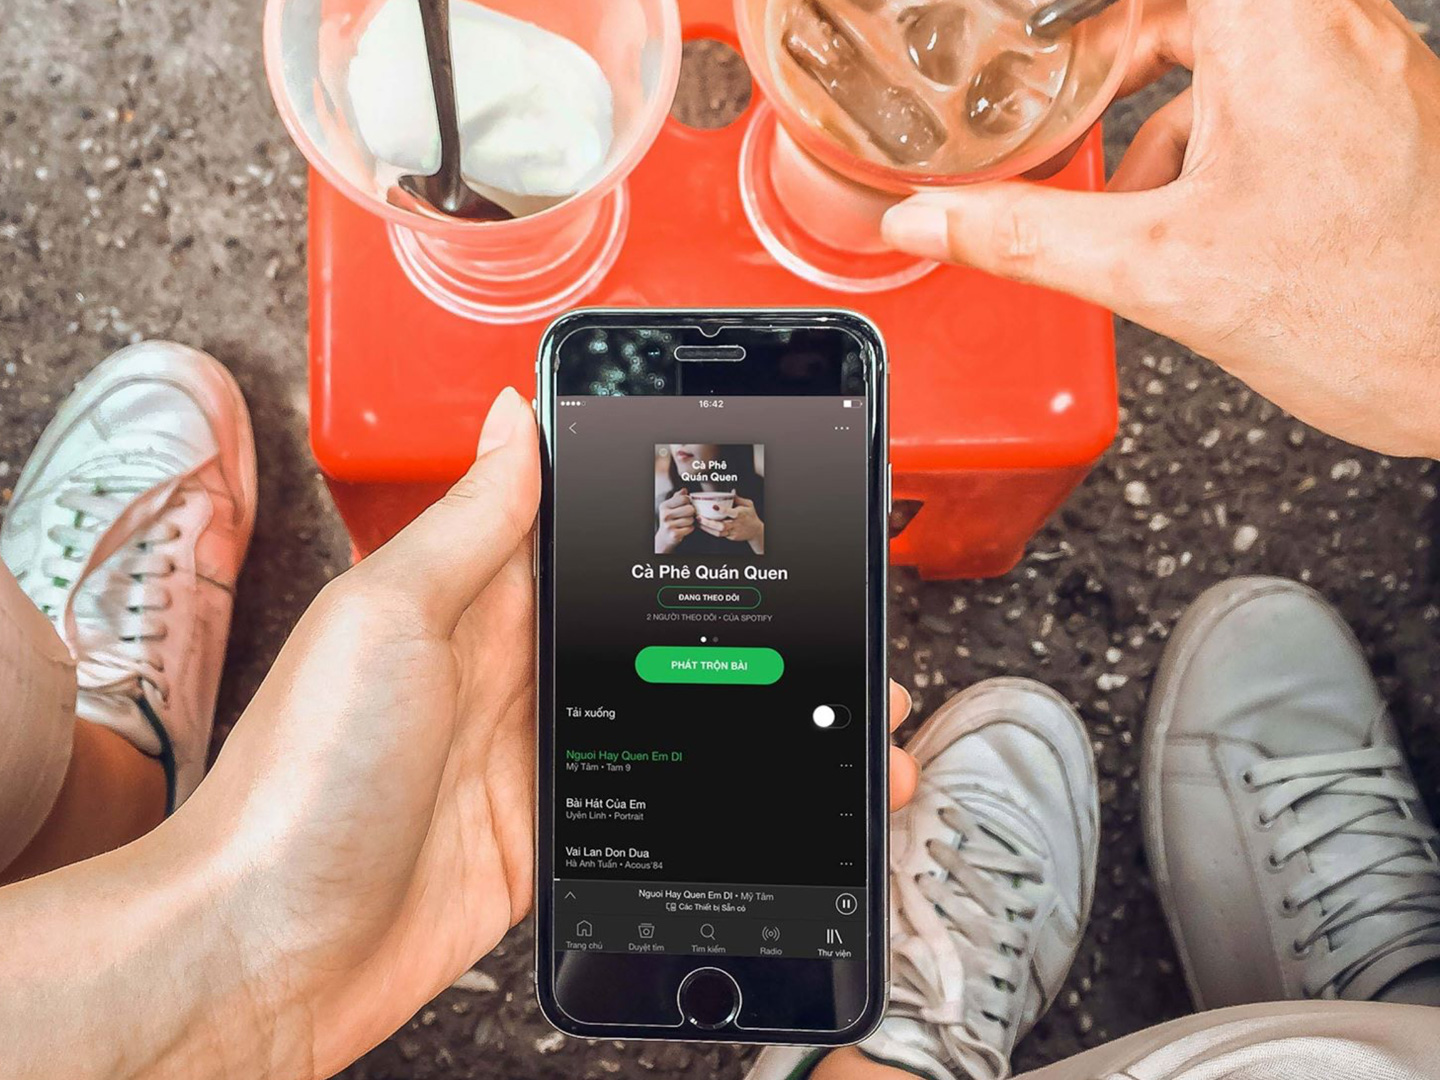 Dịch vụ nghe nhạc
trực
tuyến lớn nhất thế giới Spotify chính thức ra mắt thị trường
Việt Nam